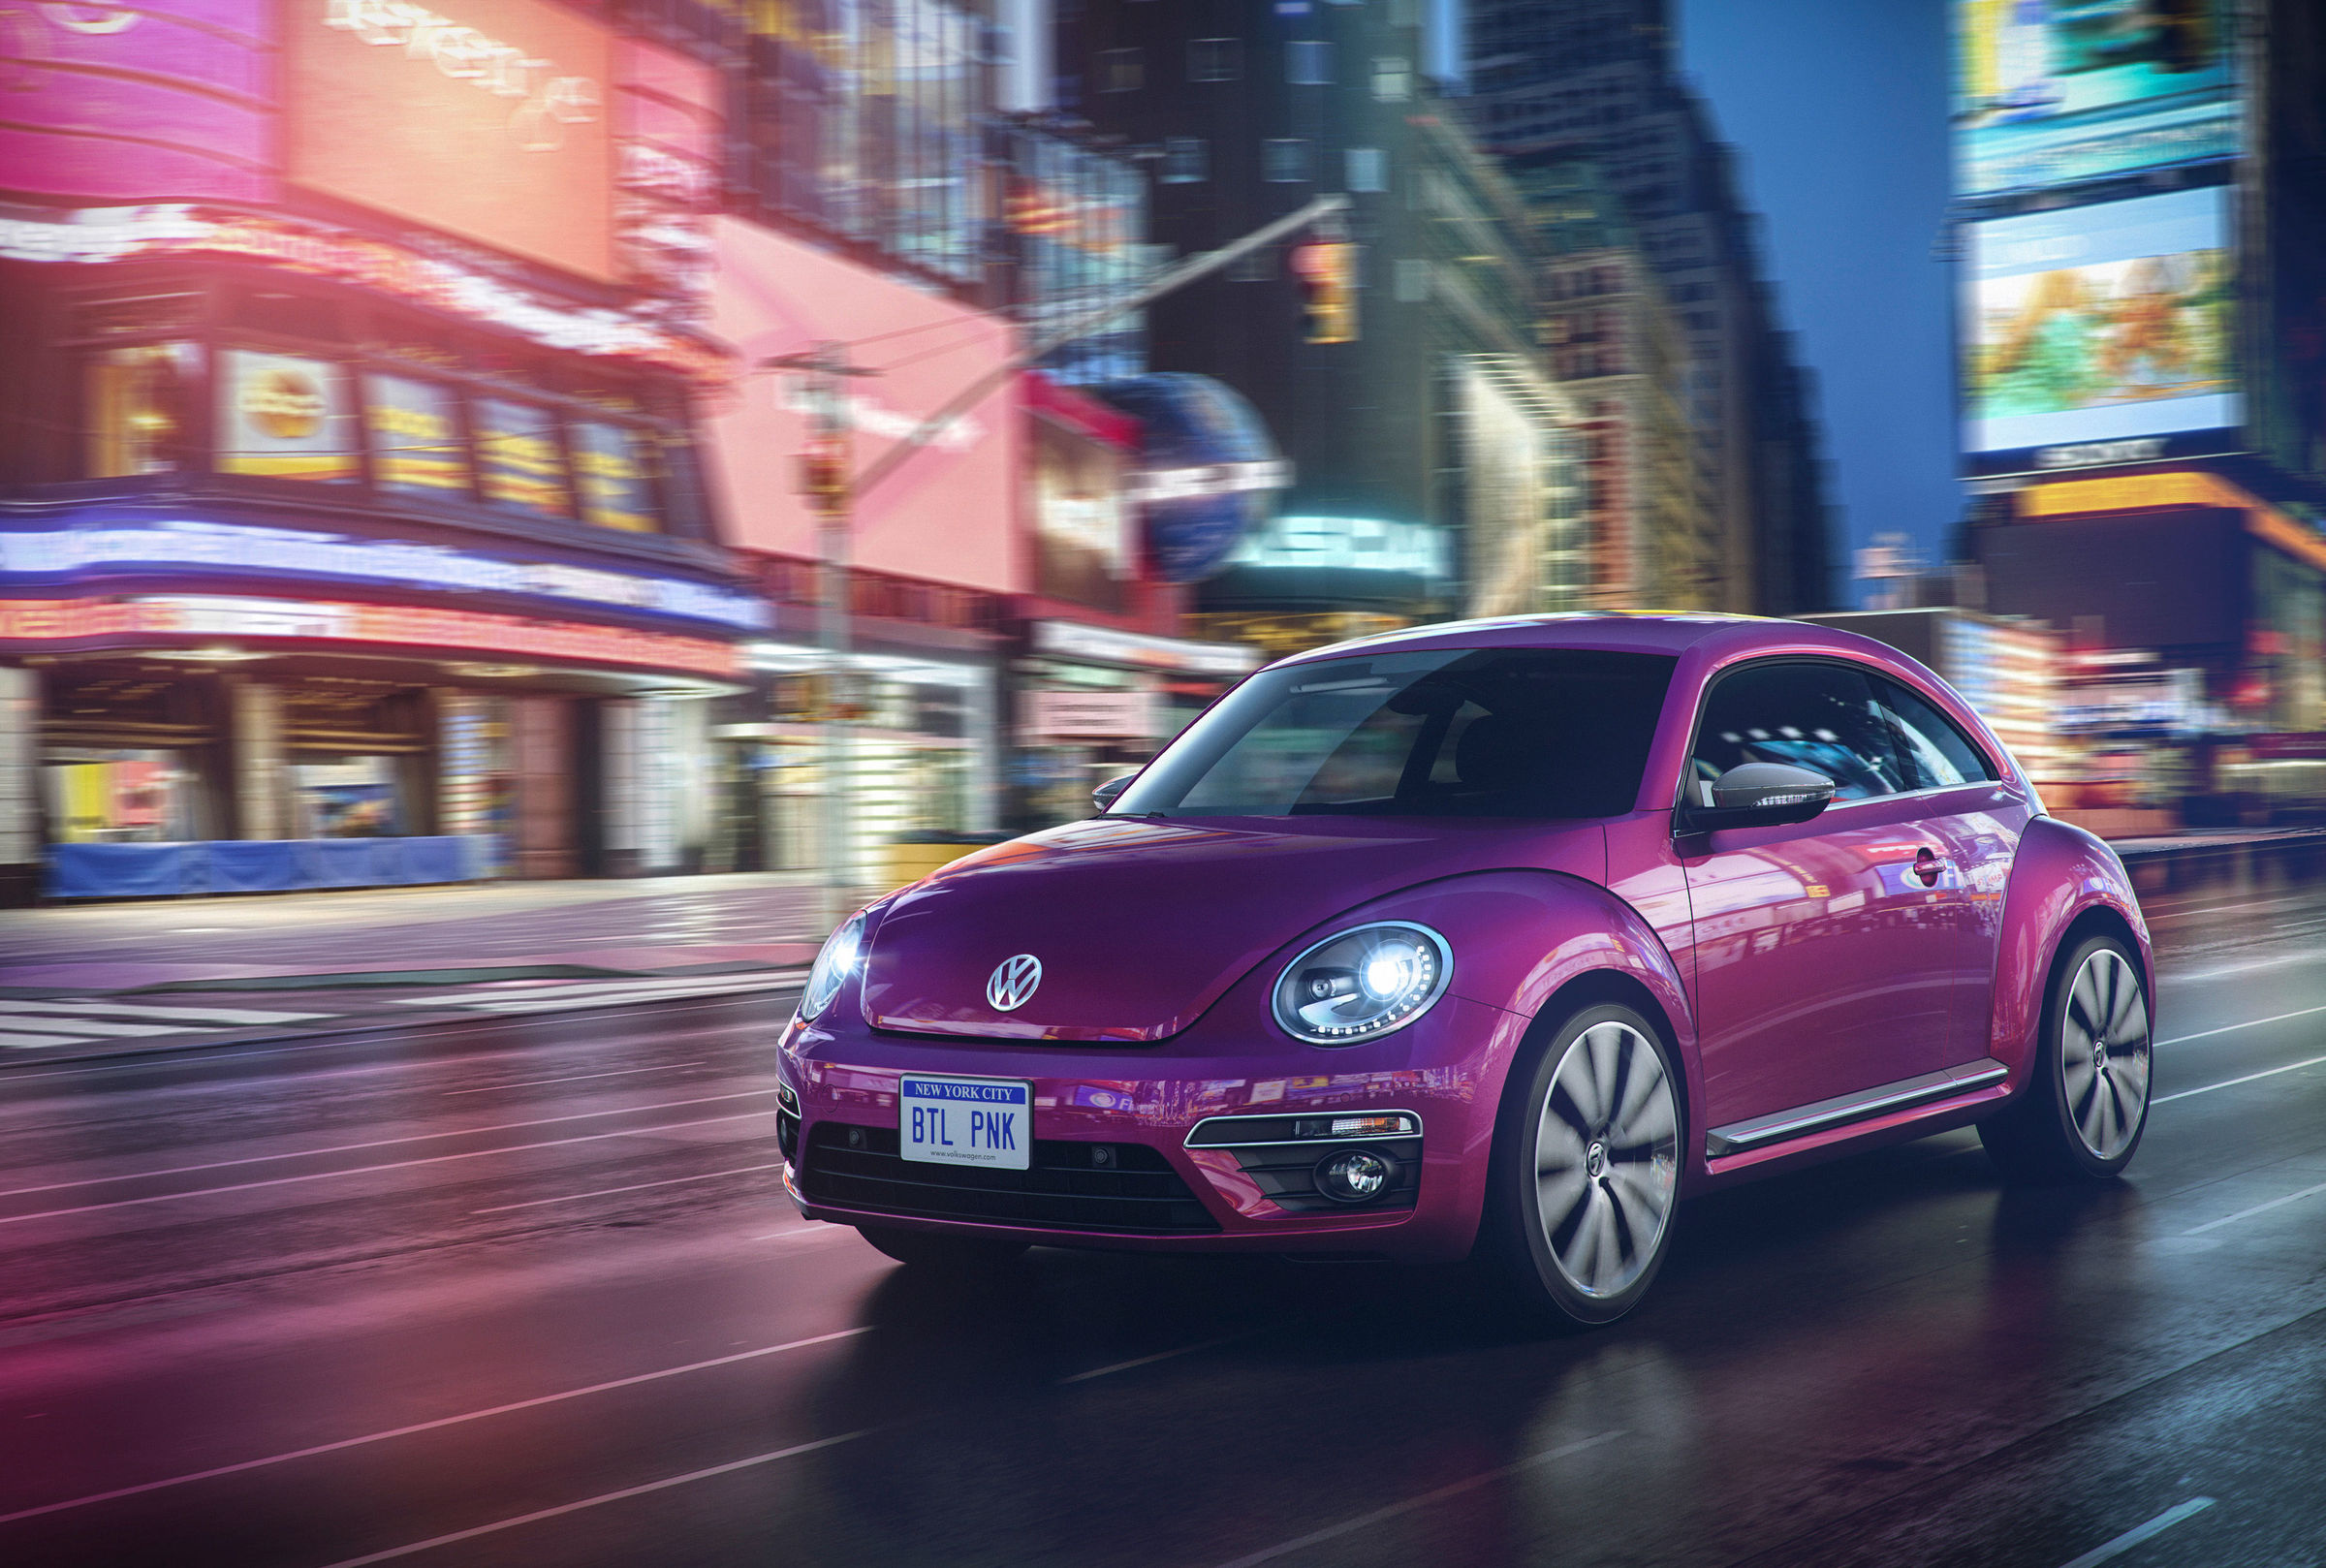 Na obrazku znajduje się Volkswagen New Beetle, reprezentujący kategorię "samochody w stylu retro".